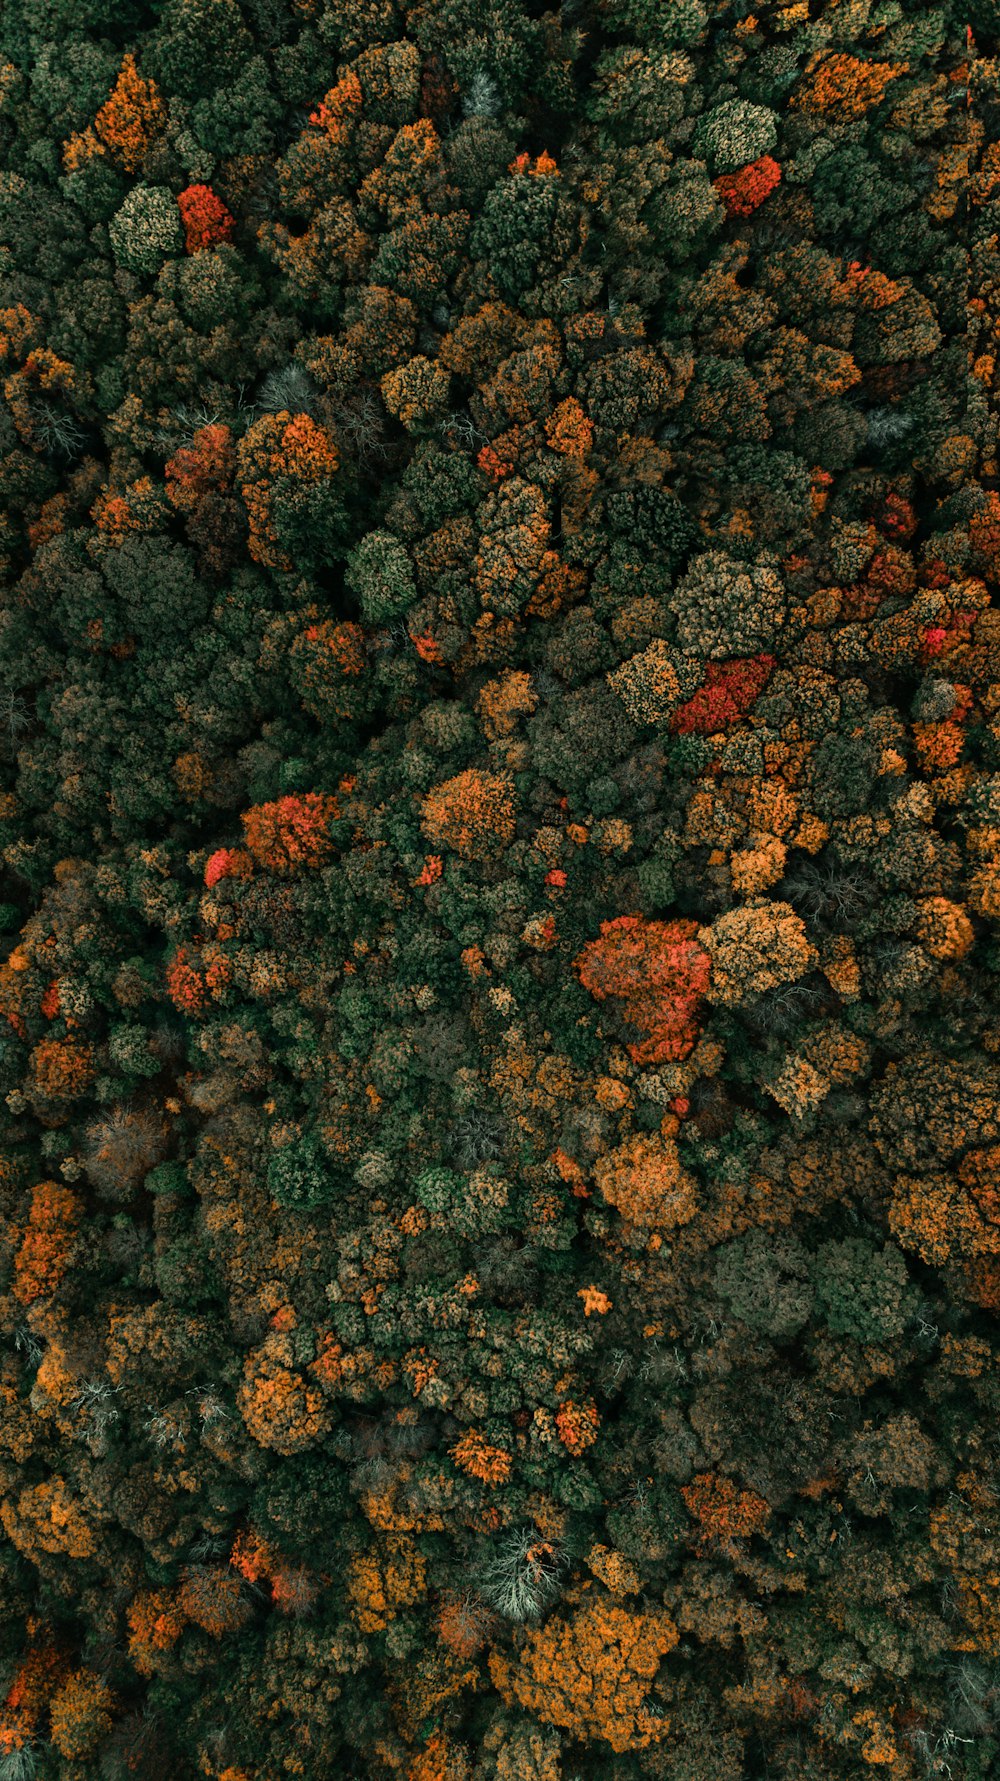 fotografia aerea di alberi dalle foglie verdi